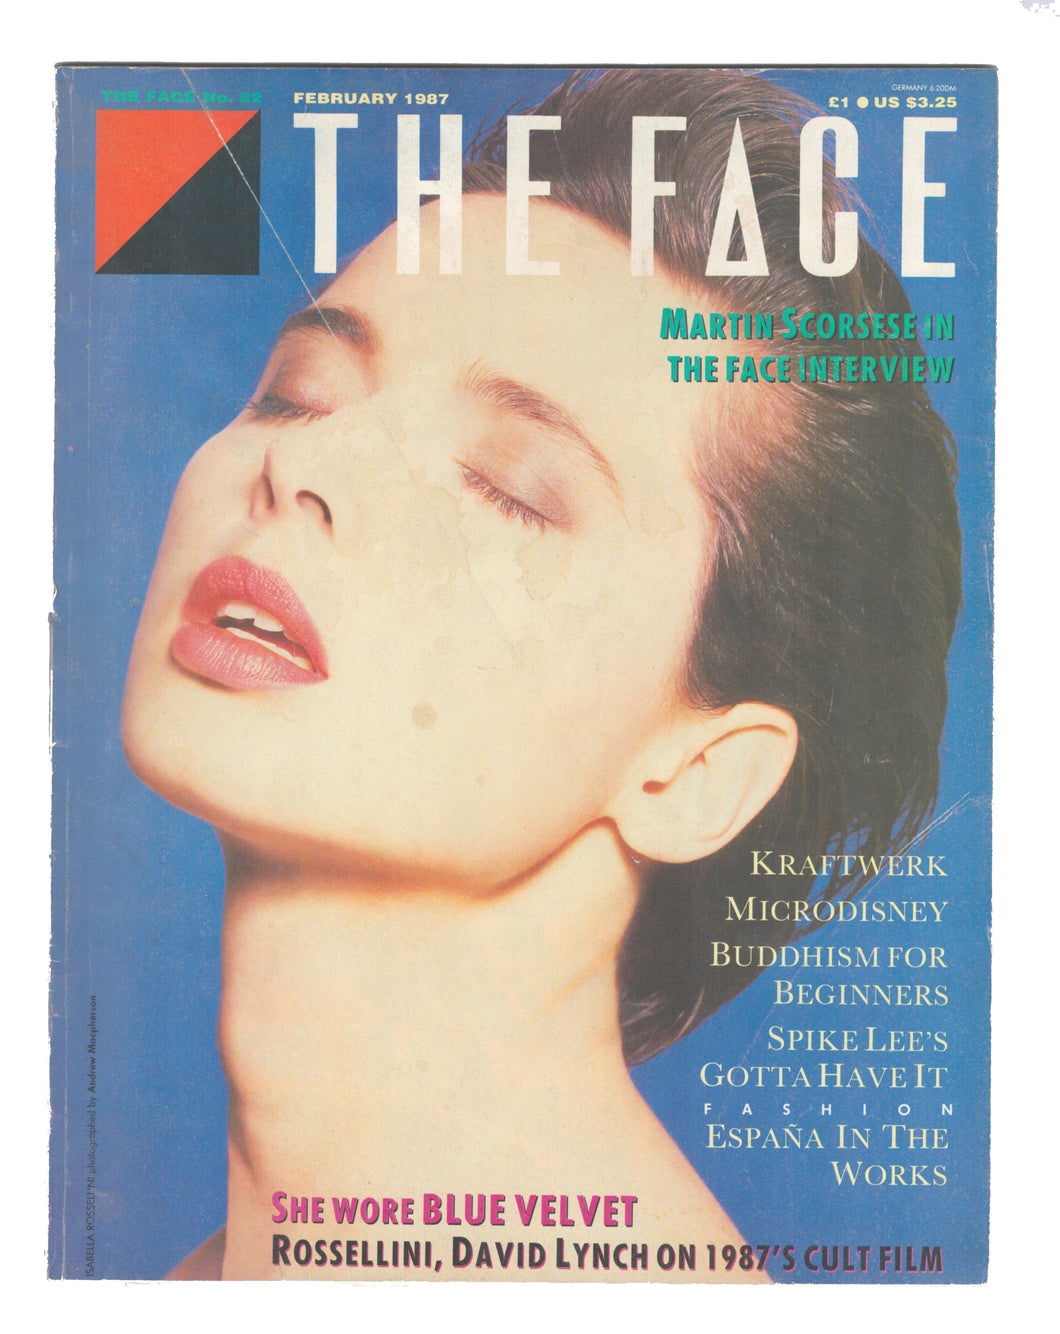 The Face No 82 Feb 1987